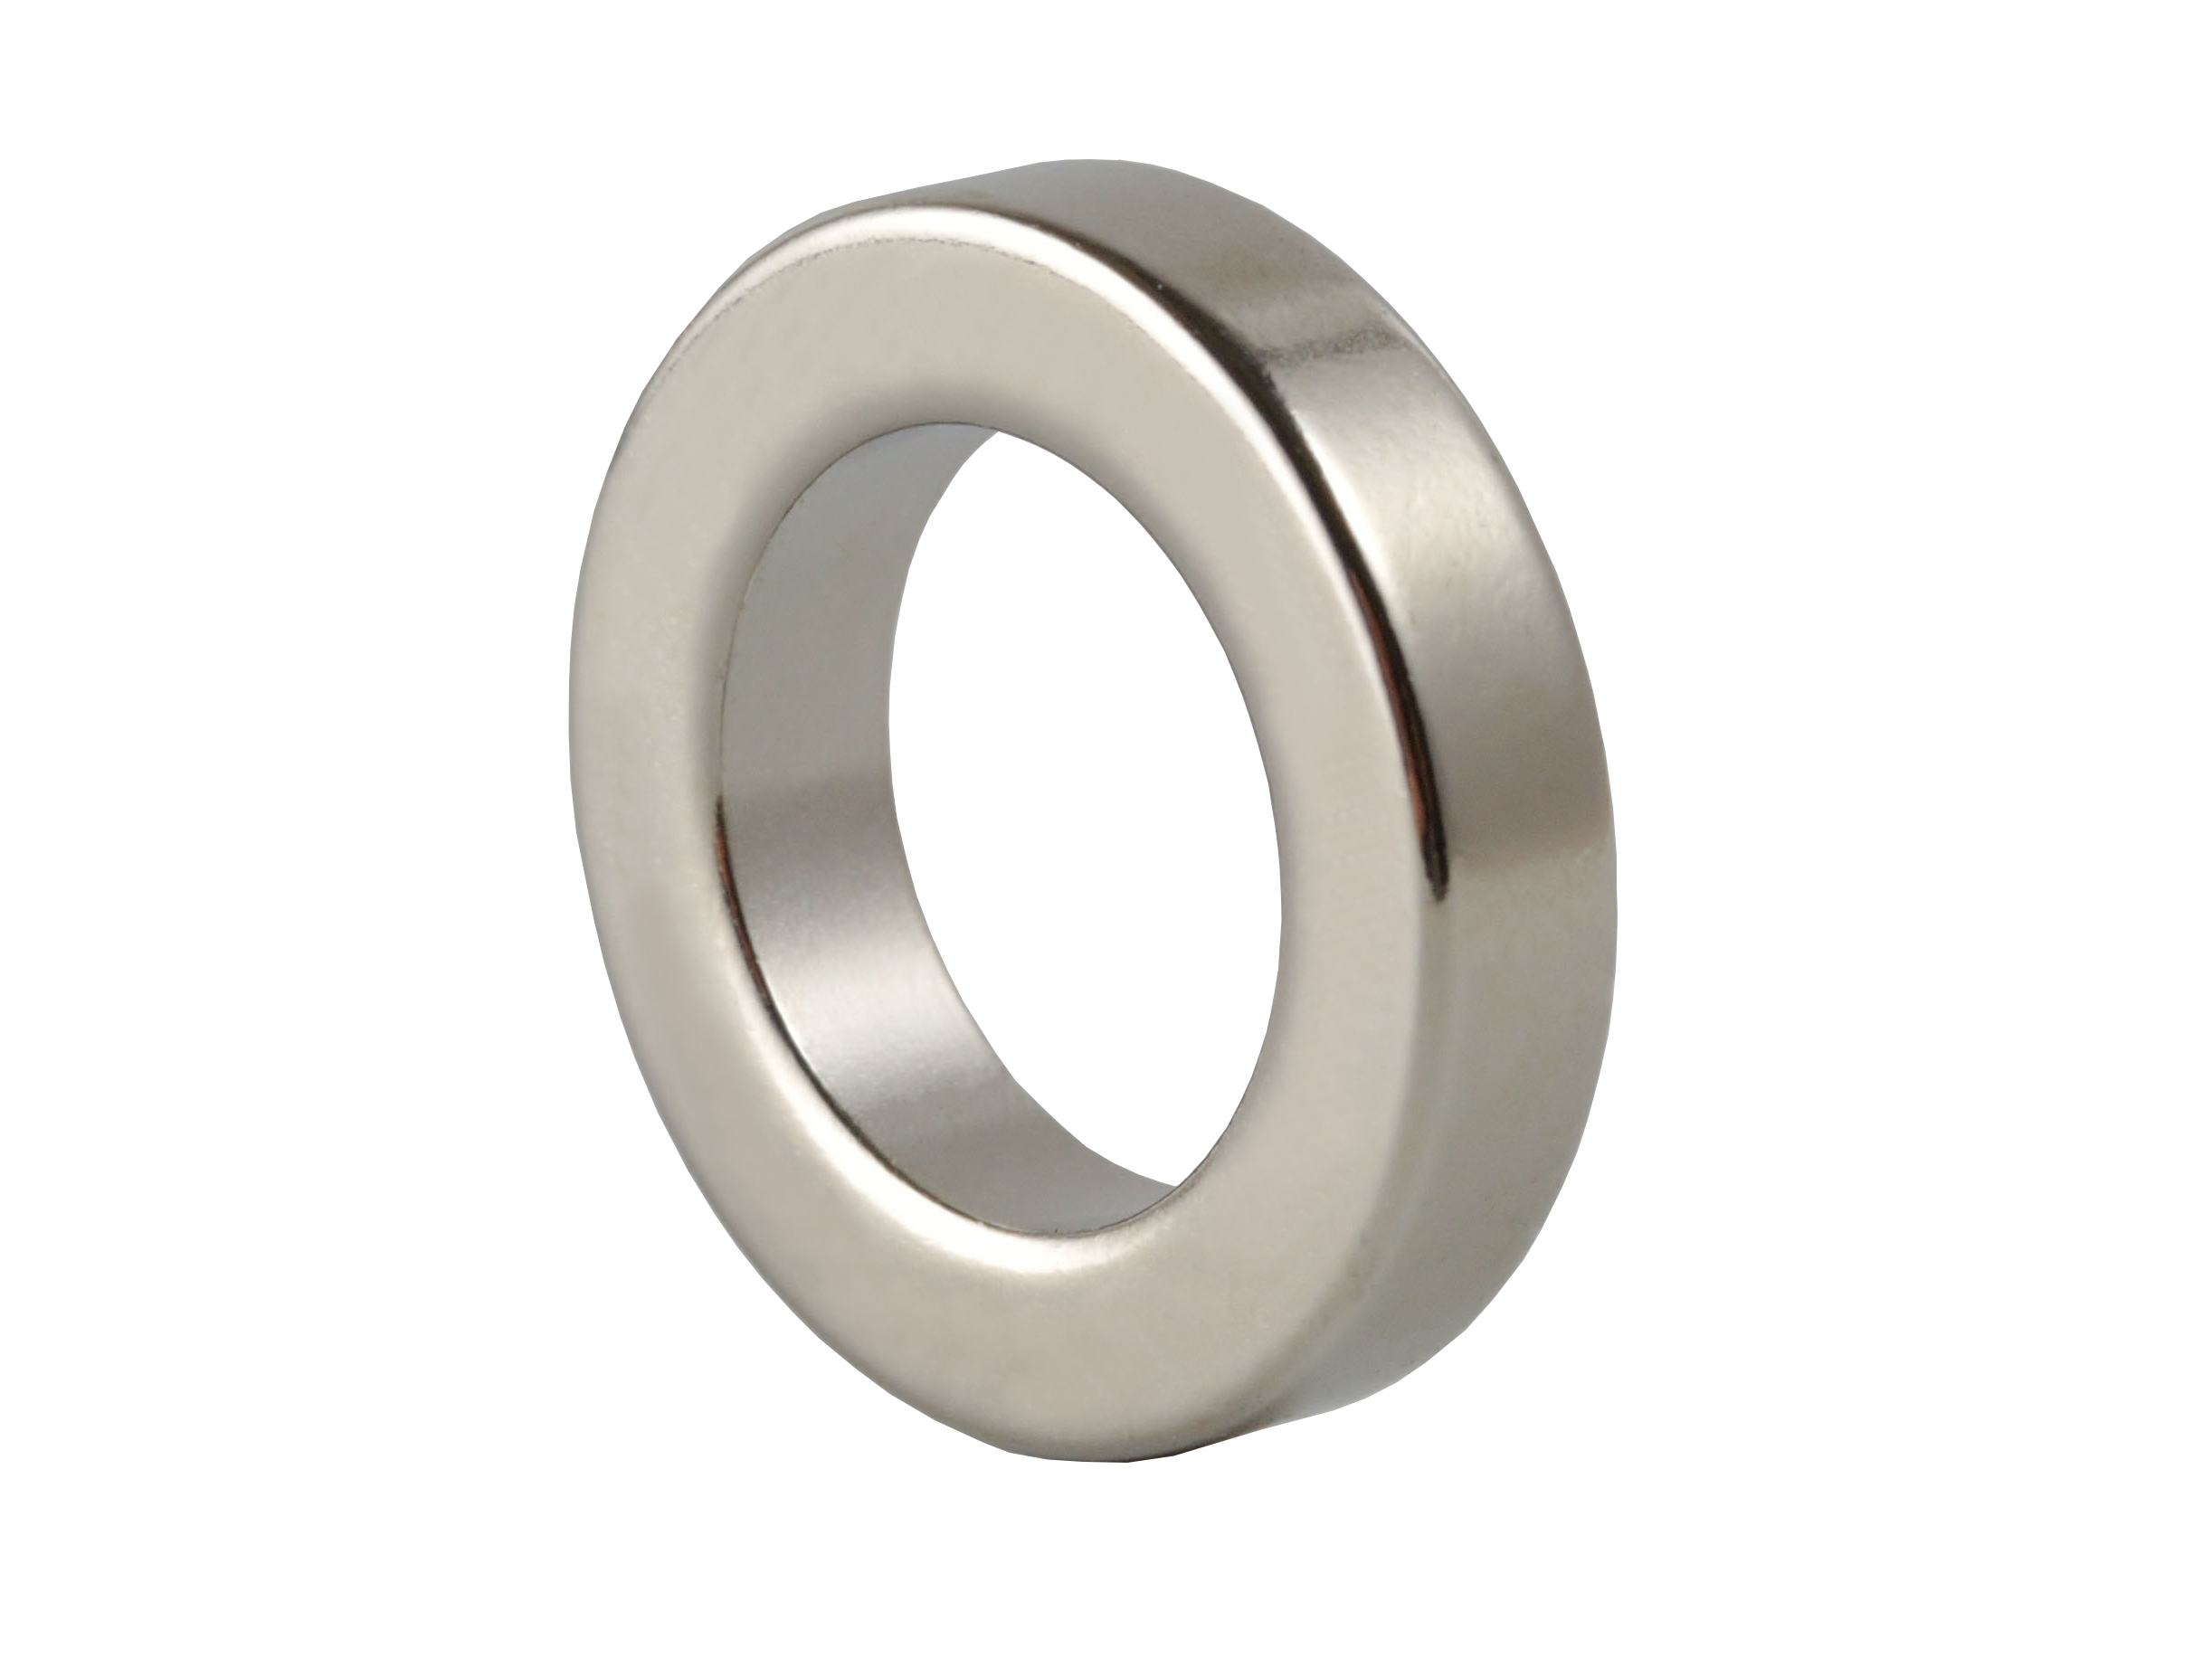 Ring‑Shaped Neodymium Magnet NOR188